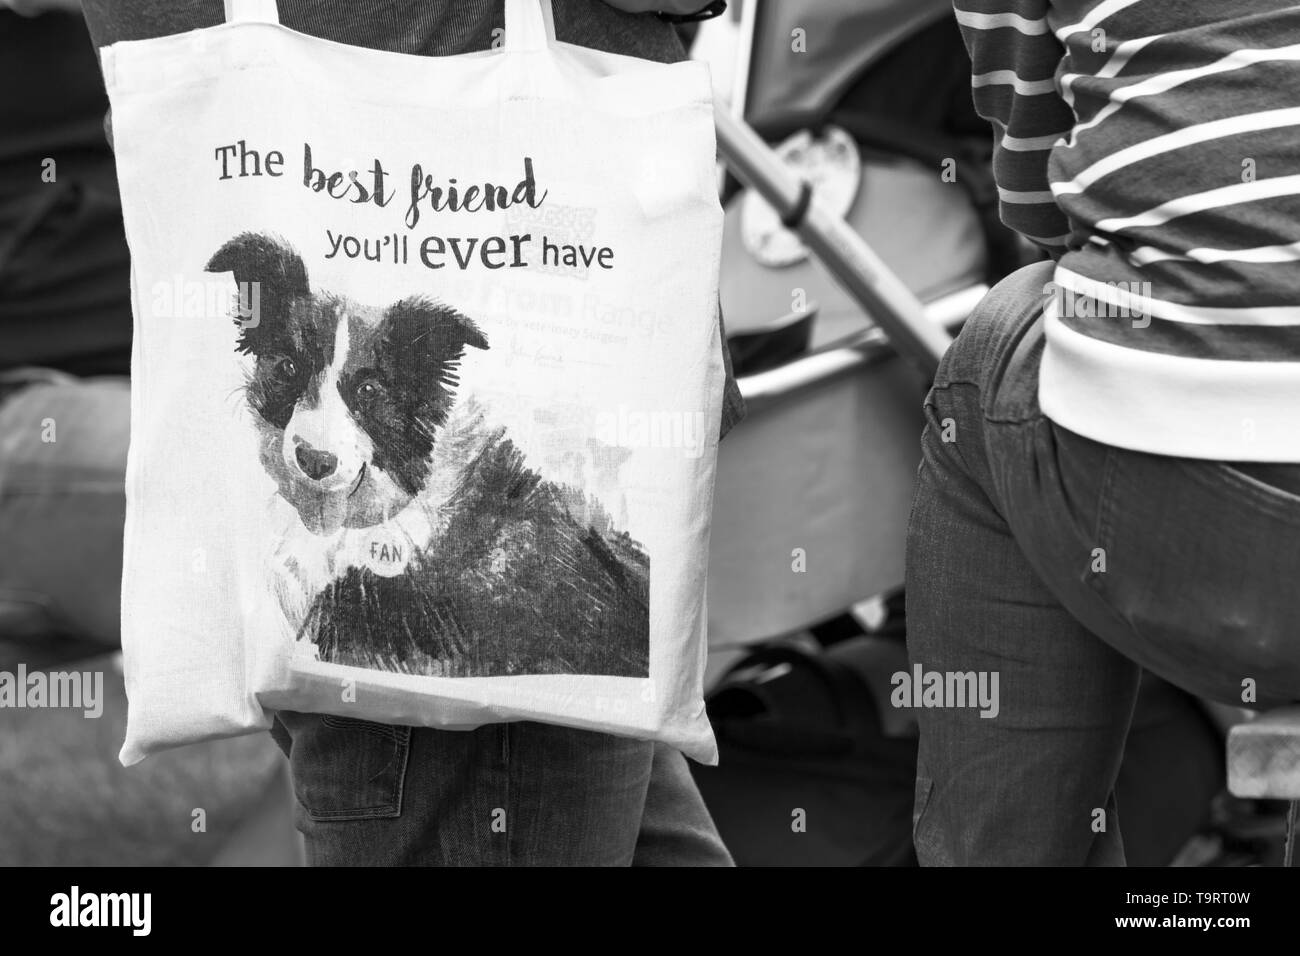 Il migliore amico che mai avrete - cane sul sacchetto a Dogstival, Pylewell Park Station Wagon, Lymington, New Forest, Regno Unito nel mese di maggio Foto Stock